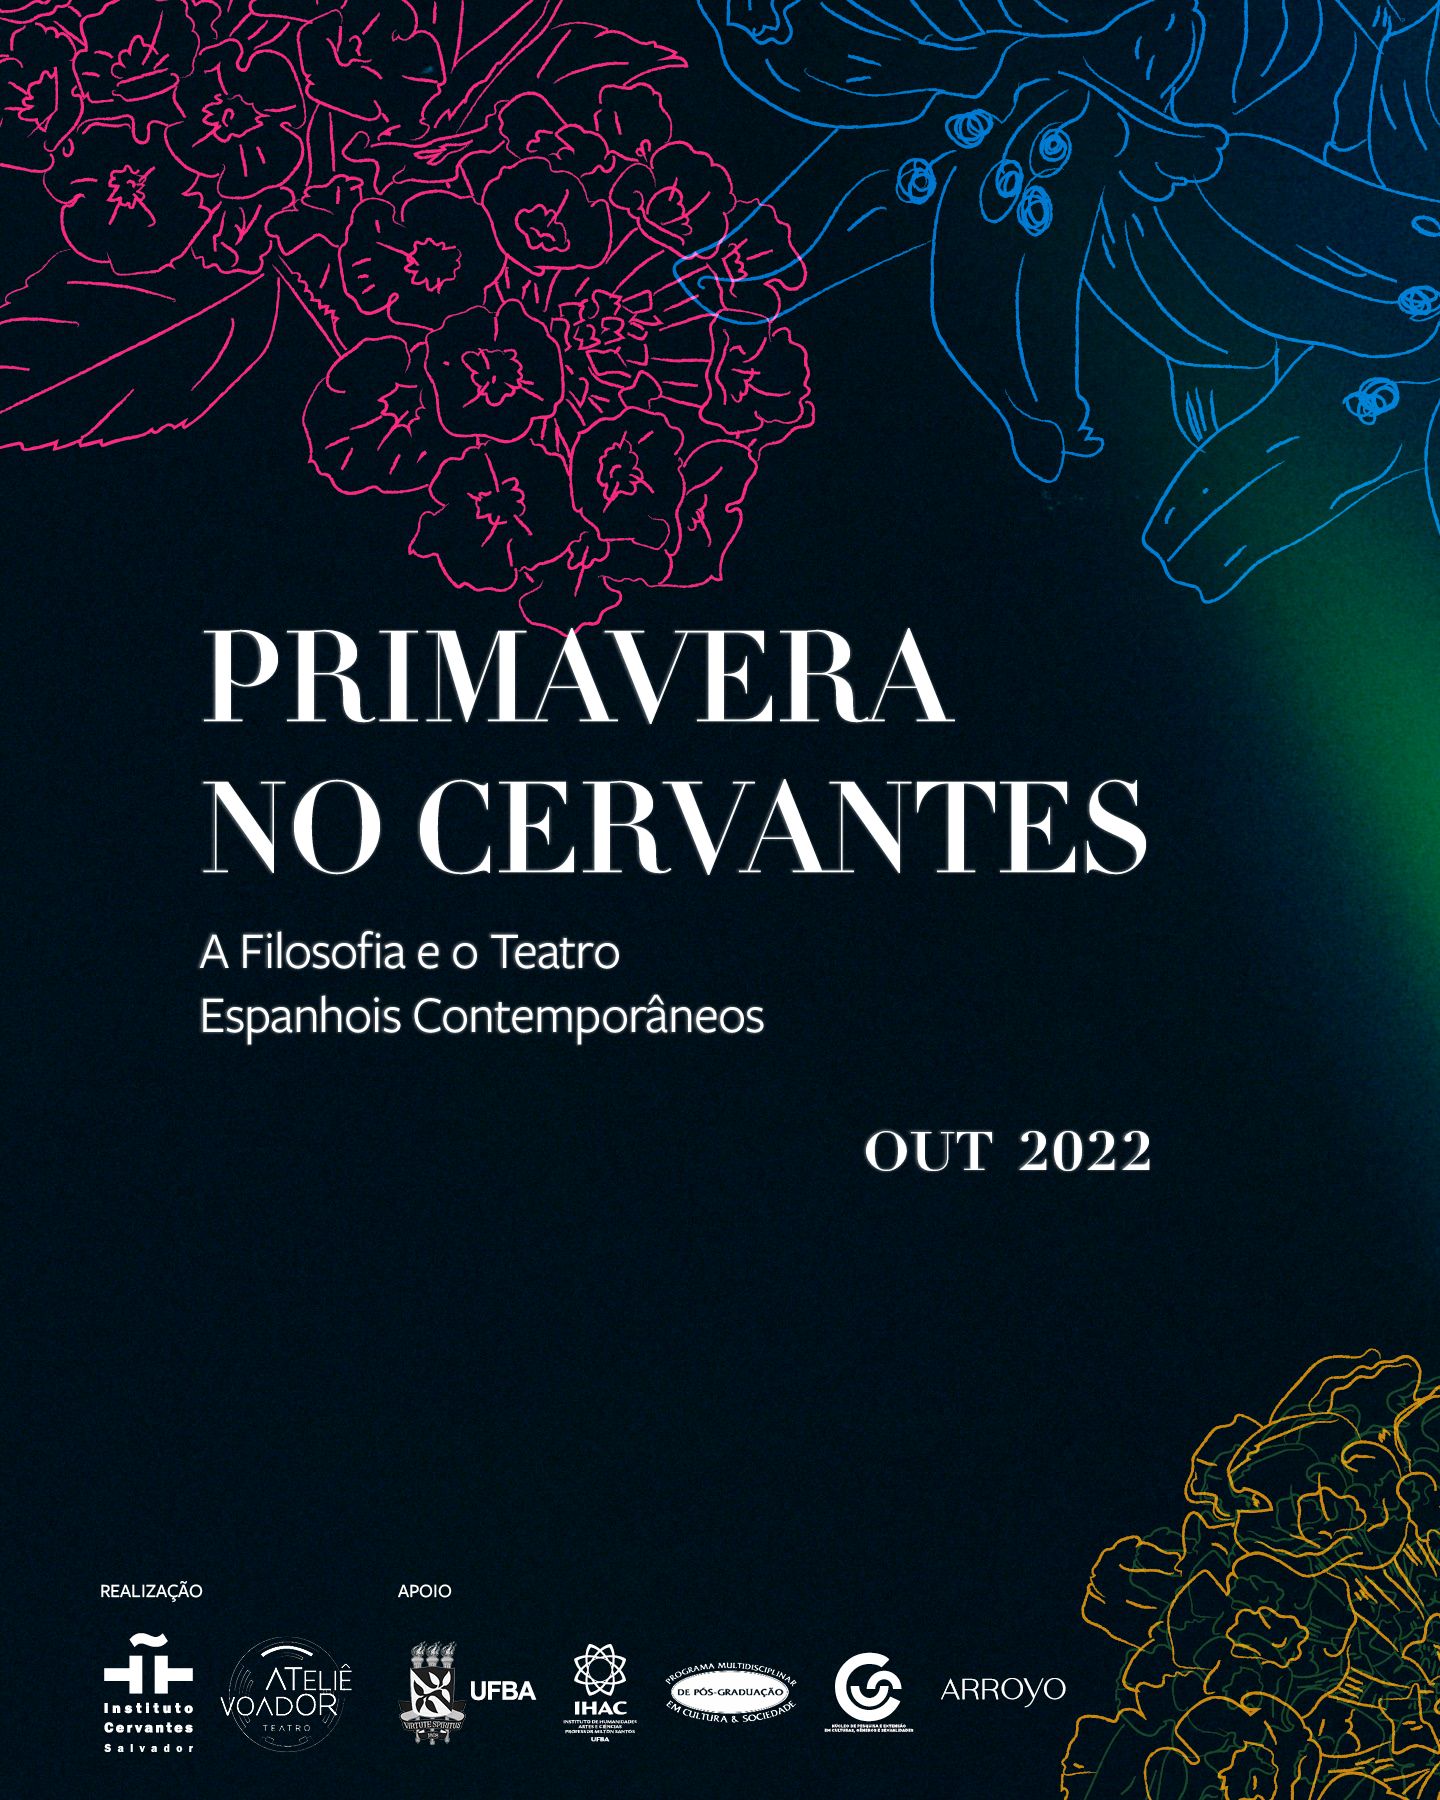 Primavera no Cervantes. A Filosofia e o Teatro Espanhois Contemporâneos